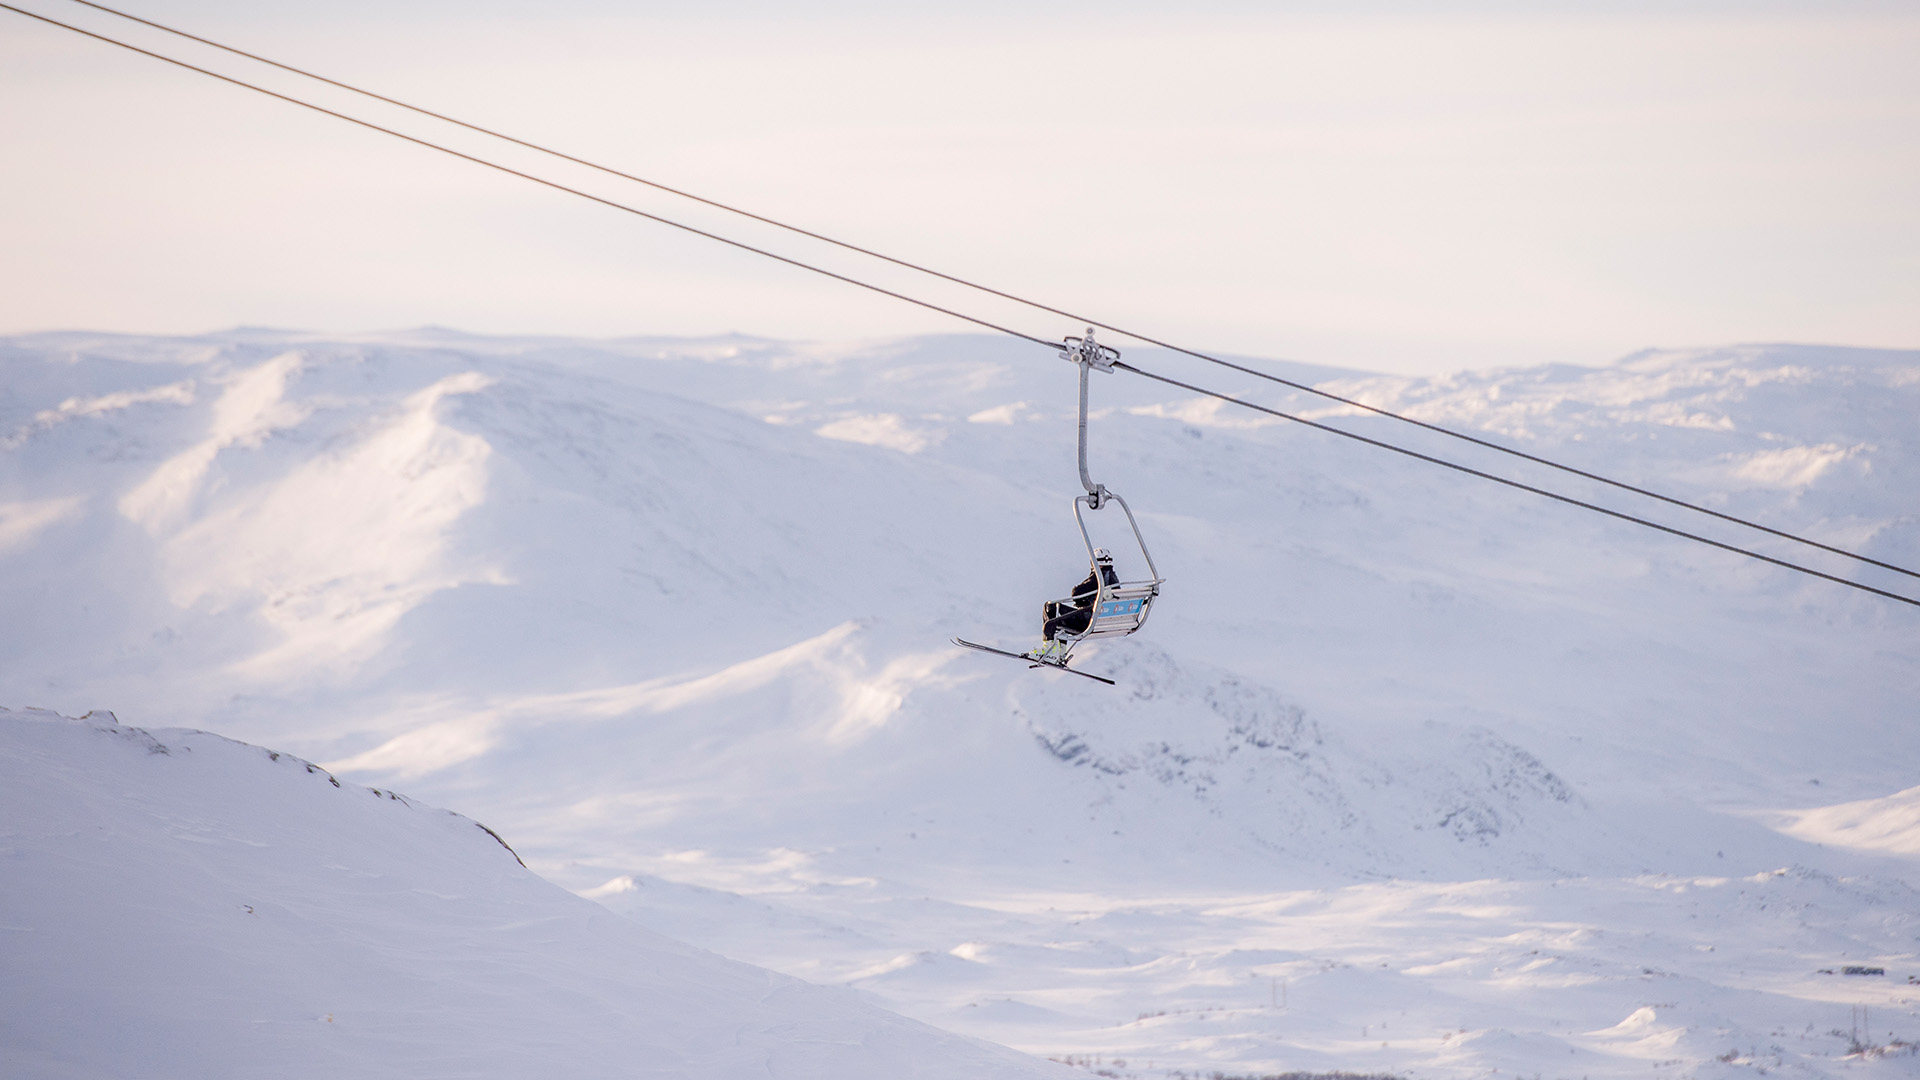 Hemsedal Ski Centre Opening Hours 2018 2019 Season